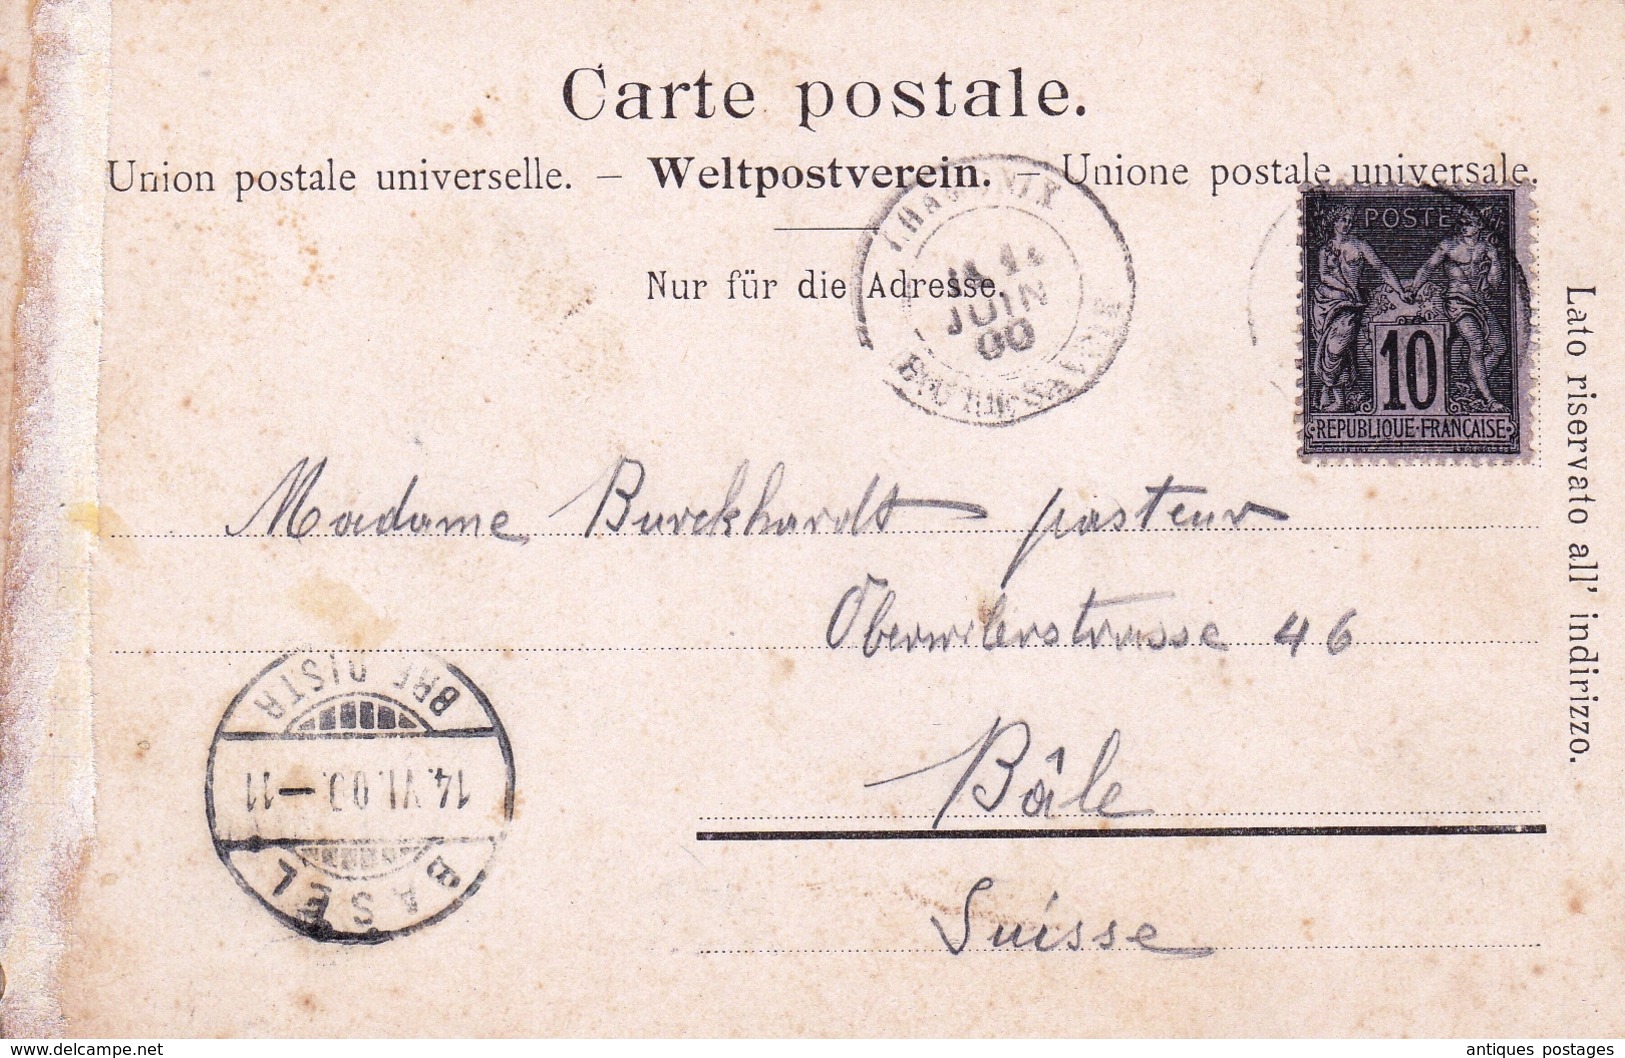 Carte Postale Chamonix Haute Savoie Mont Blanc Argentières 1900 Type Sage Basel Bâle Suisse - 1898-1900 Sage (Type III)